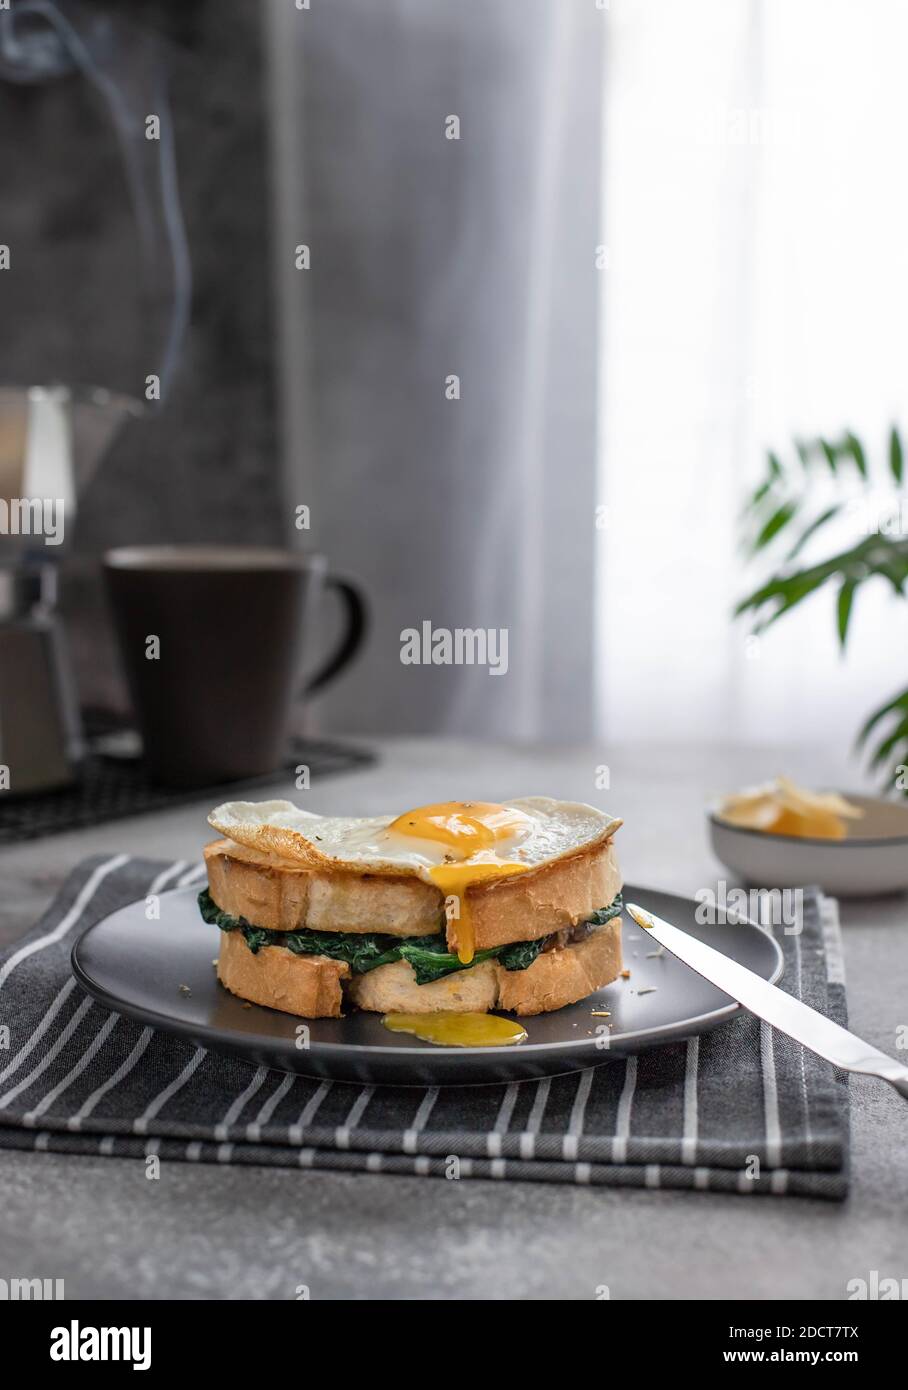 Ein Sandwich mit einem Eigelb, das aus einem Spiegelei fließt. Leckeres Frühstückssandwich mit Spinat und Kaffeemaschine mit heißem Kaffee. Stockfoto